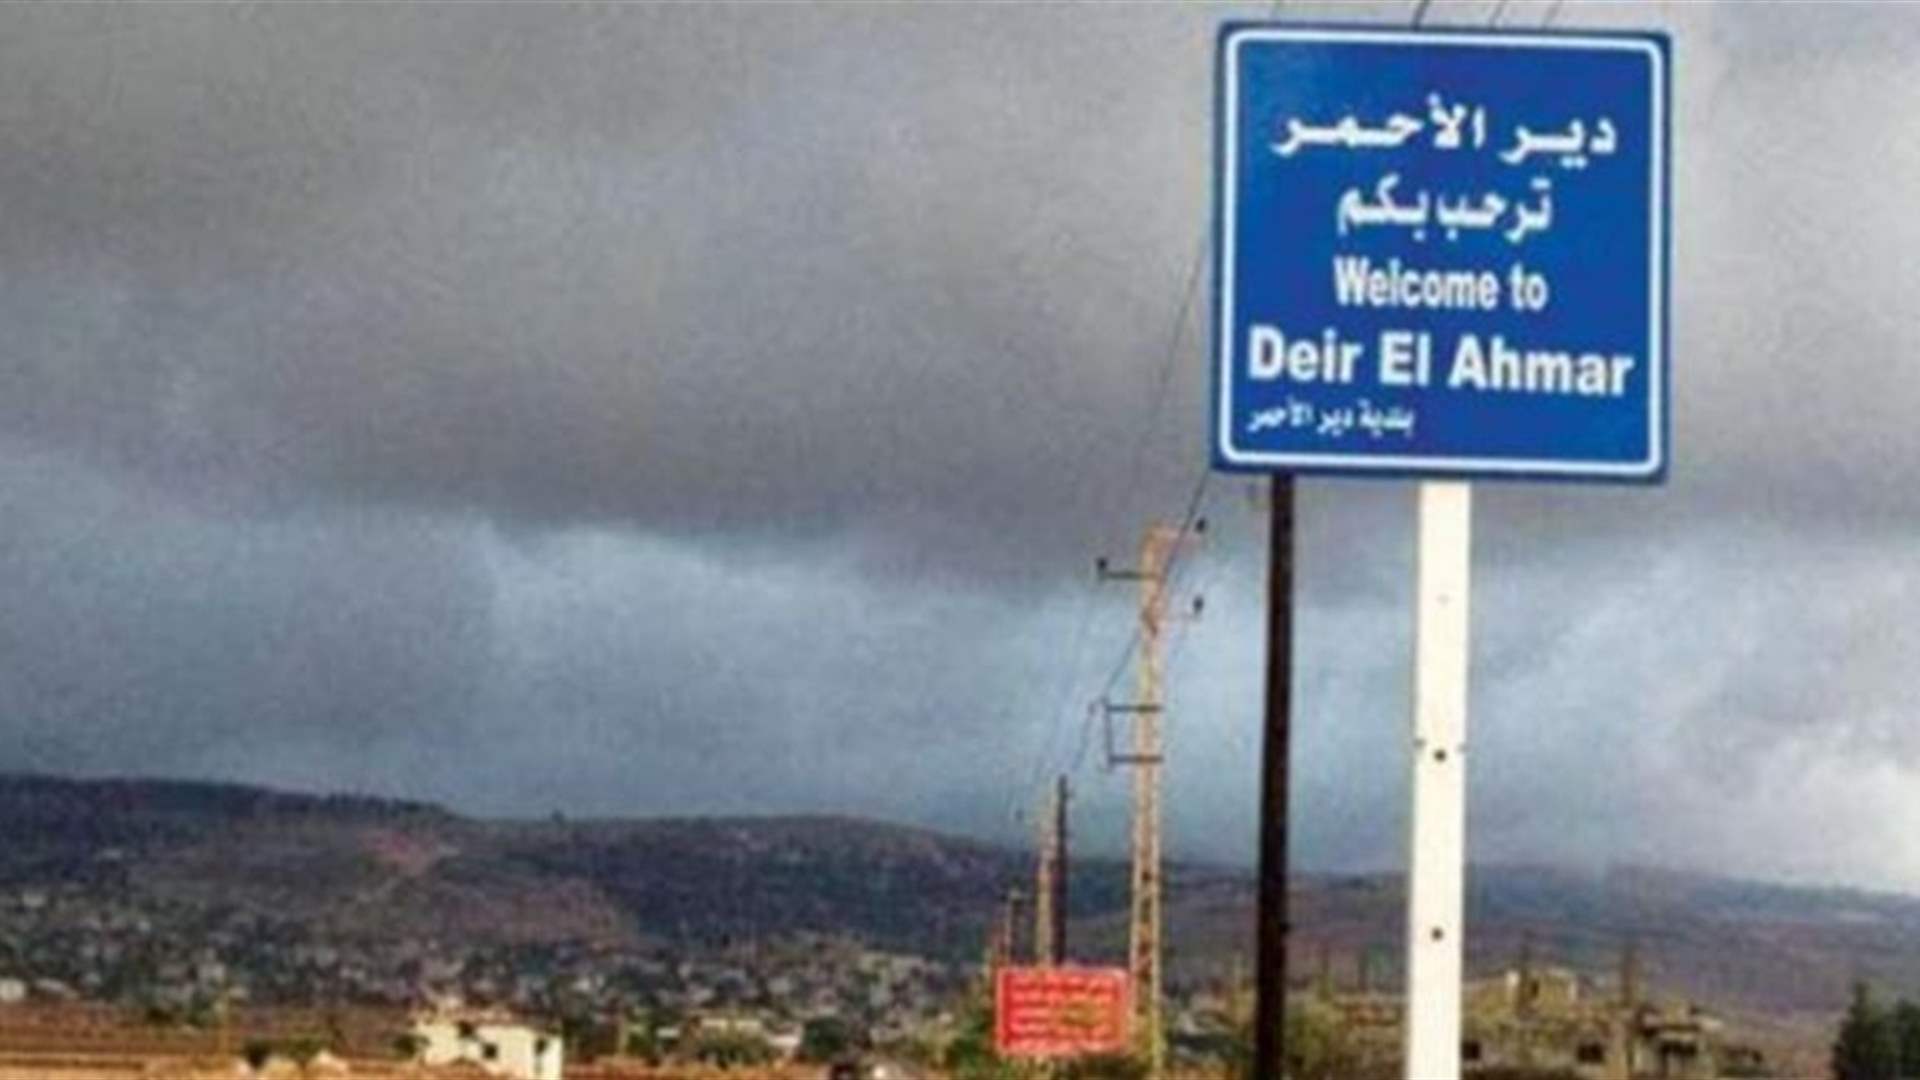 شرطة بلدية دير الأحمر طلبت من نازحين سوريين مخالفين تفكيك خيمهم